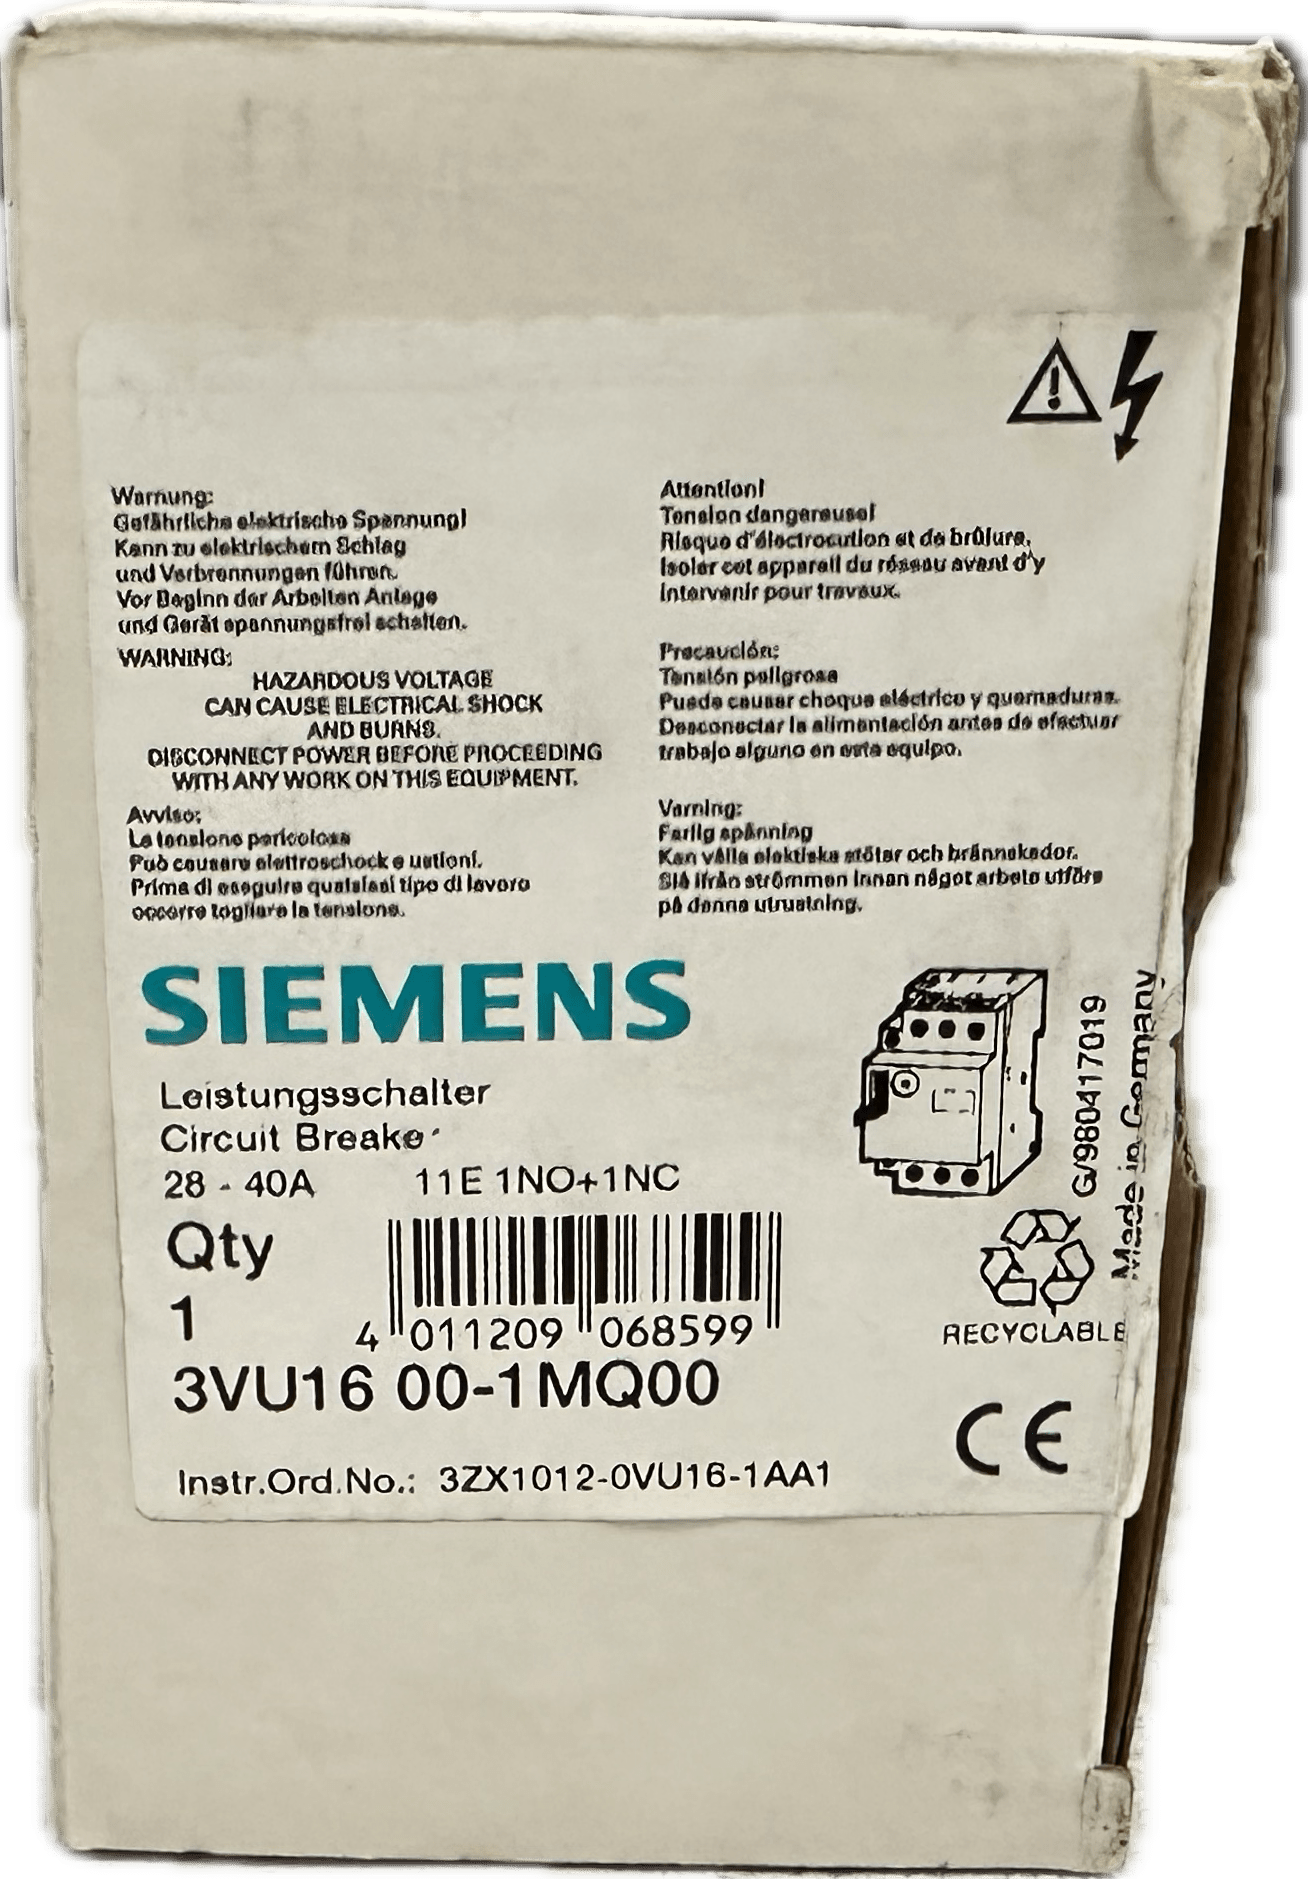 Siemens 3VU1600-1MQ00 - #product_category# | Klenk Maschinenhandel